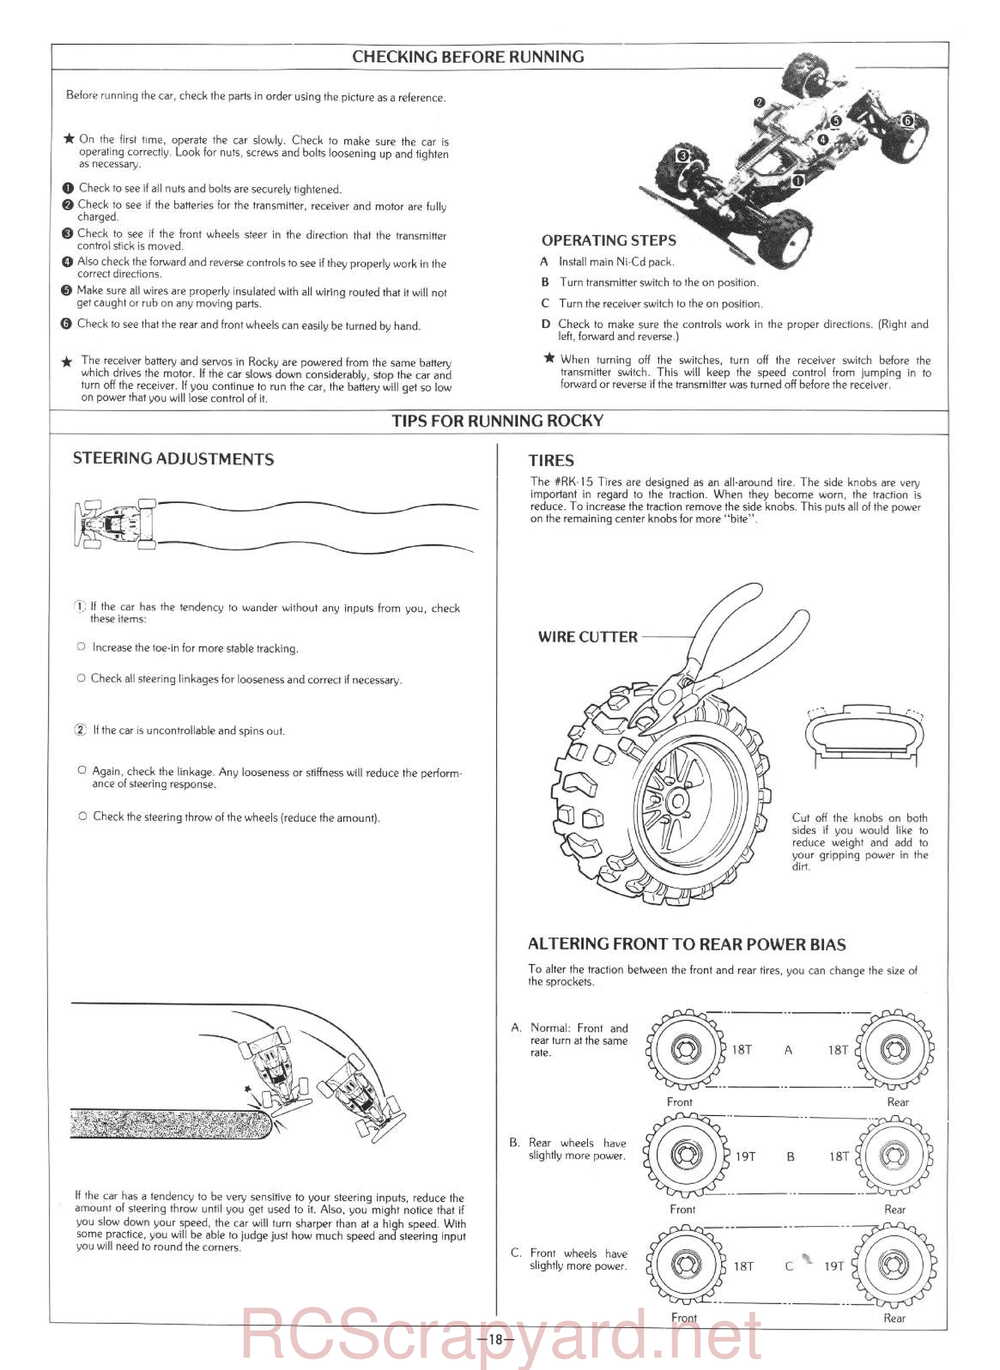 Kyosho - 3101 - Rocky - Manual - Page 18